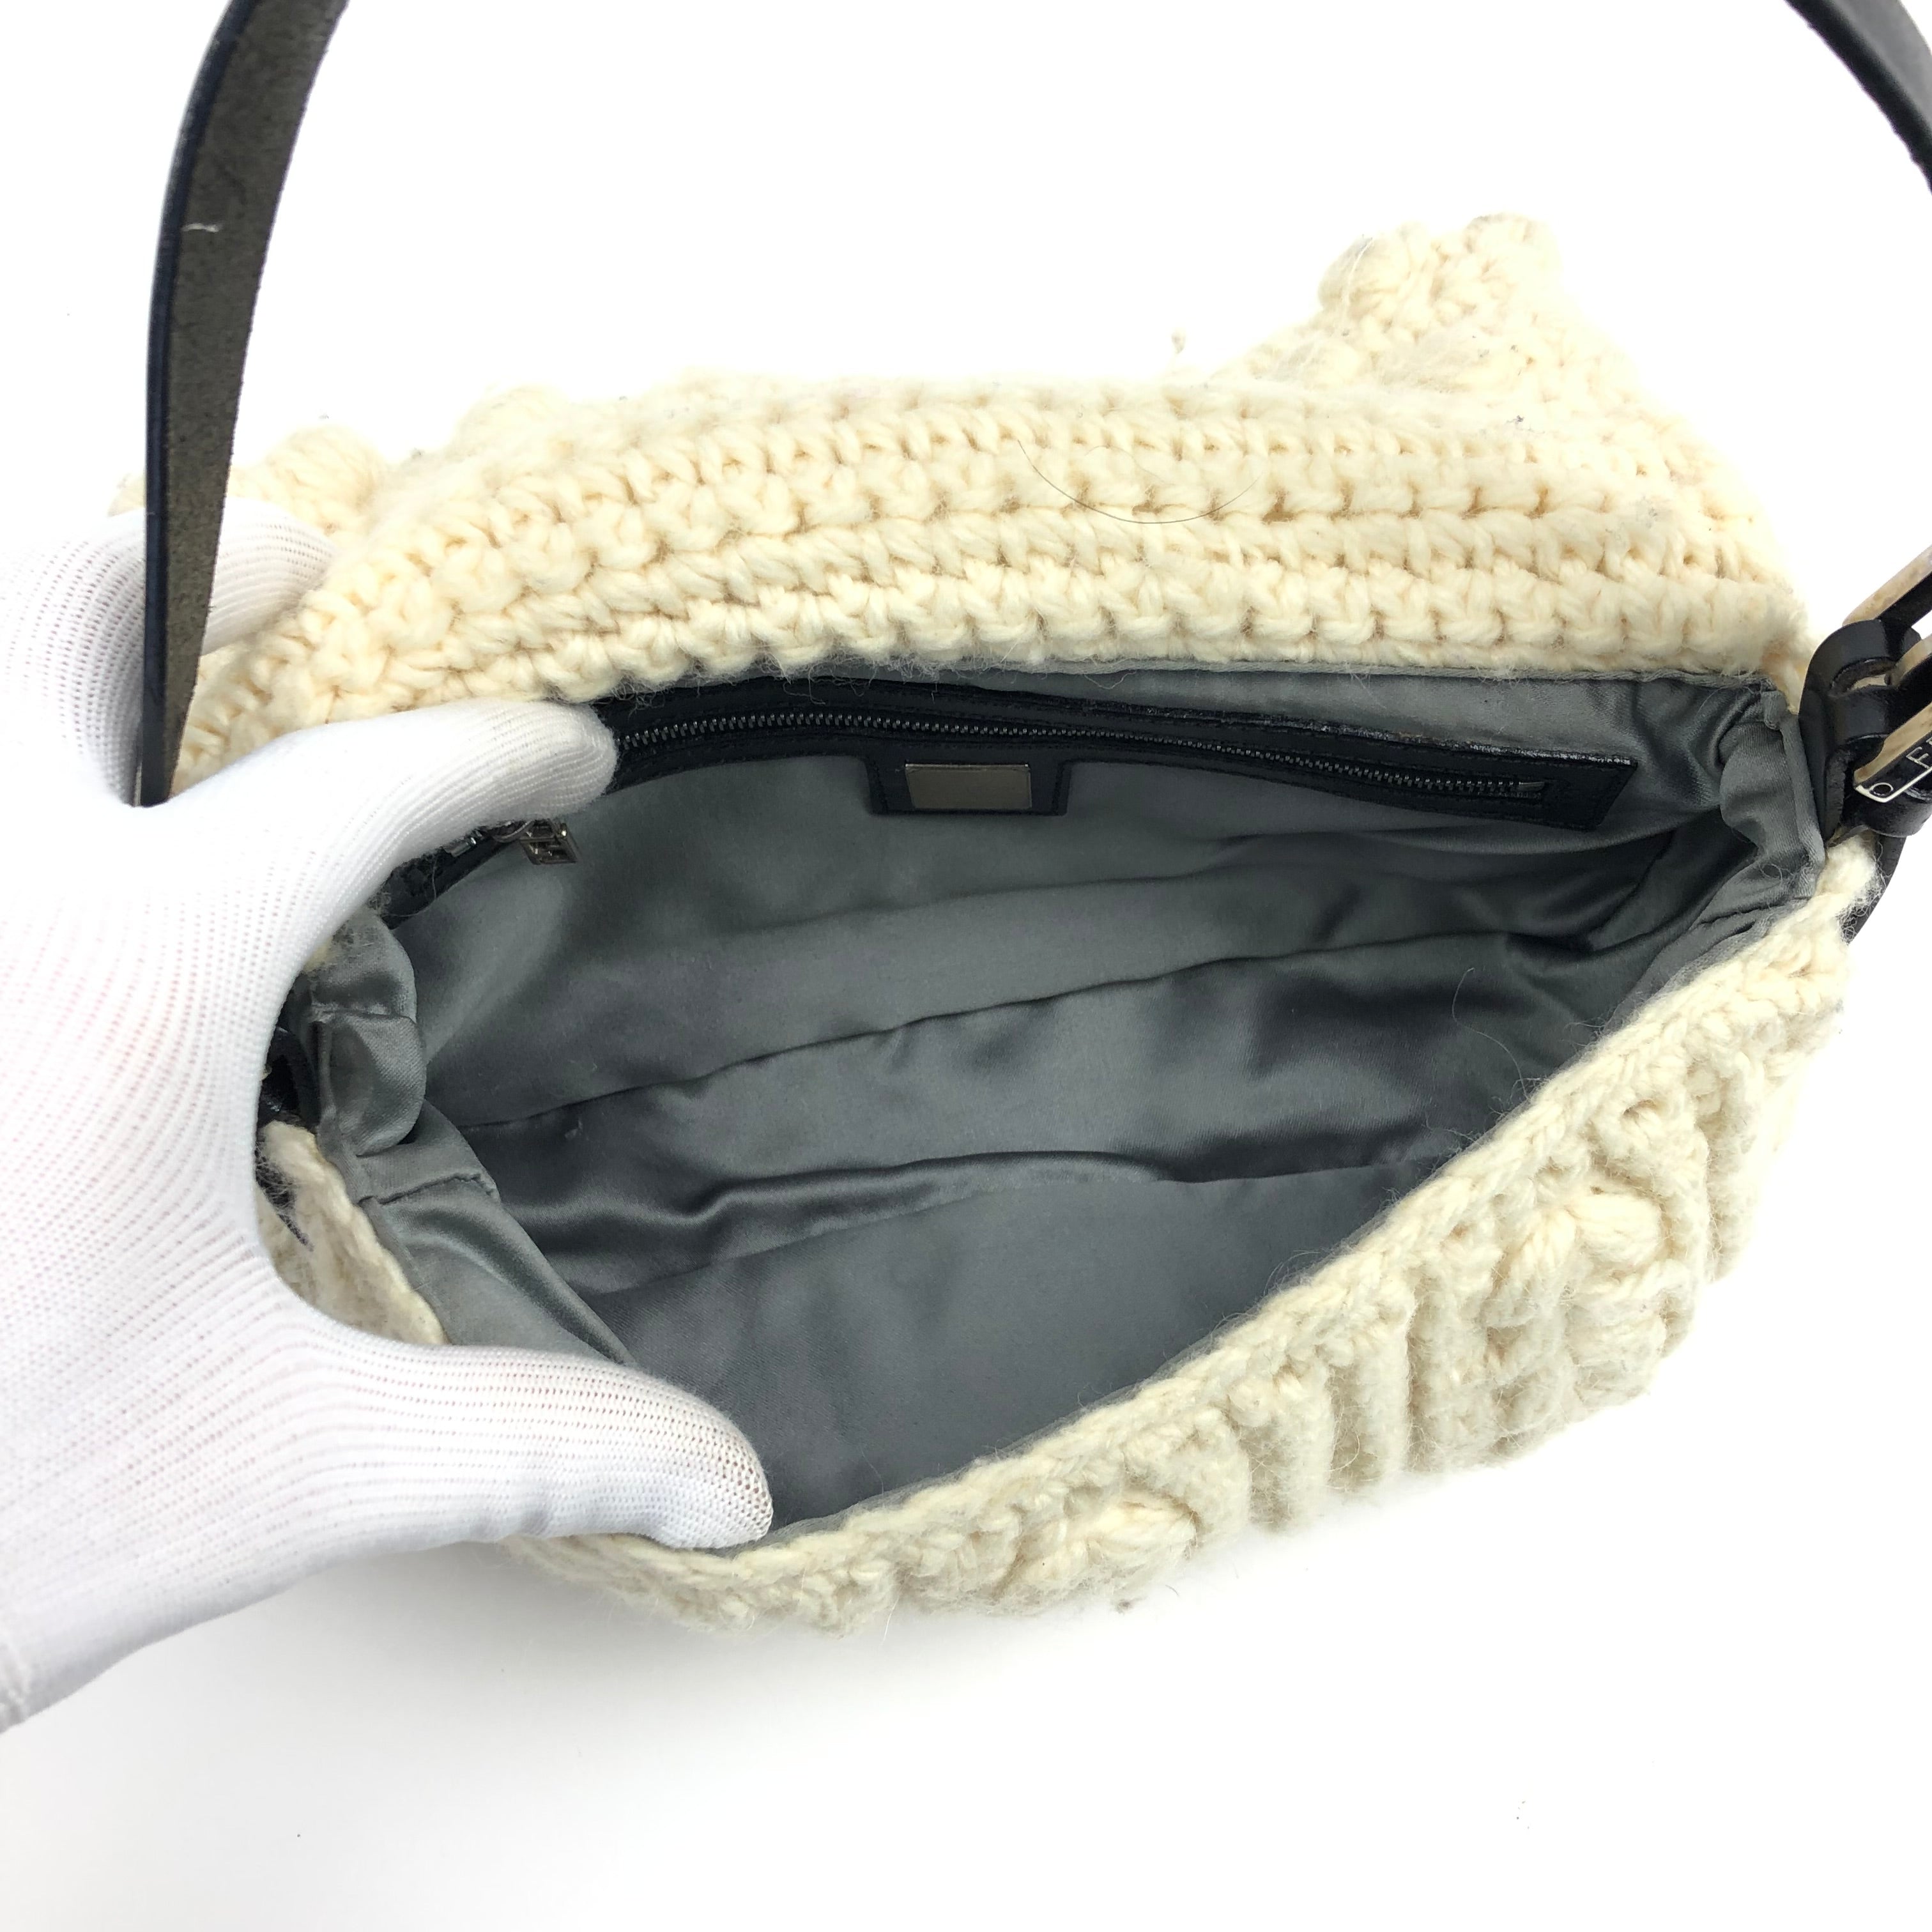 Fendi Crochet Baguette Bag